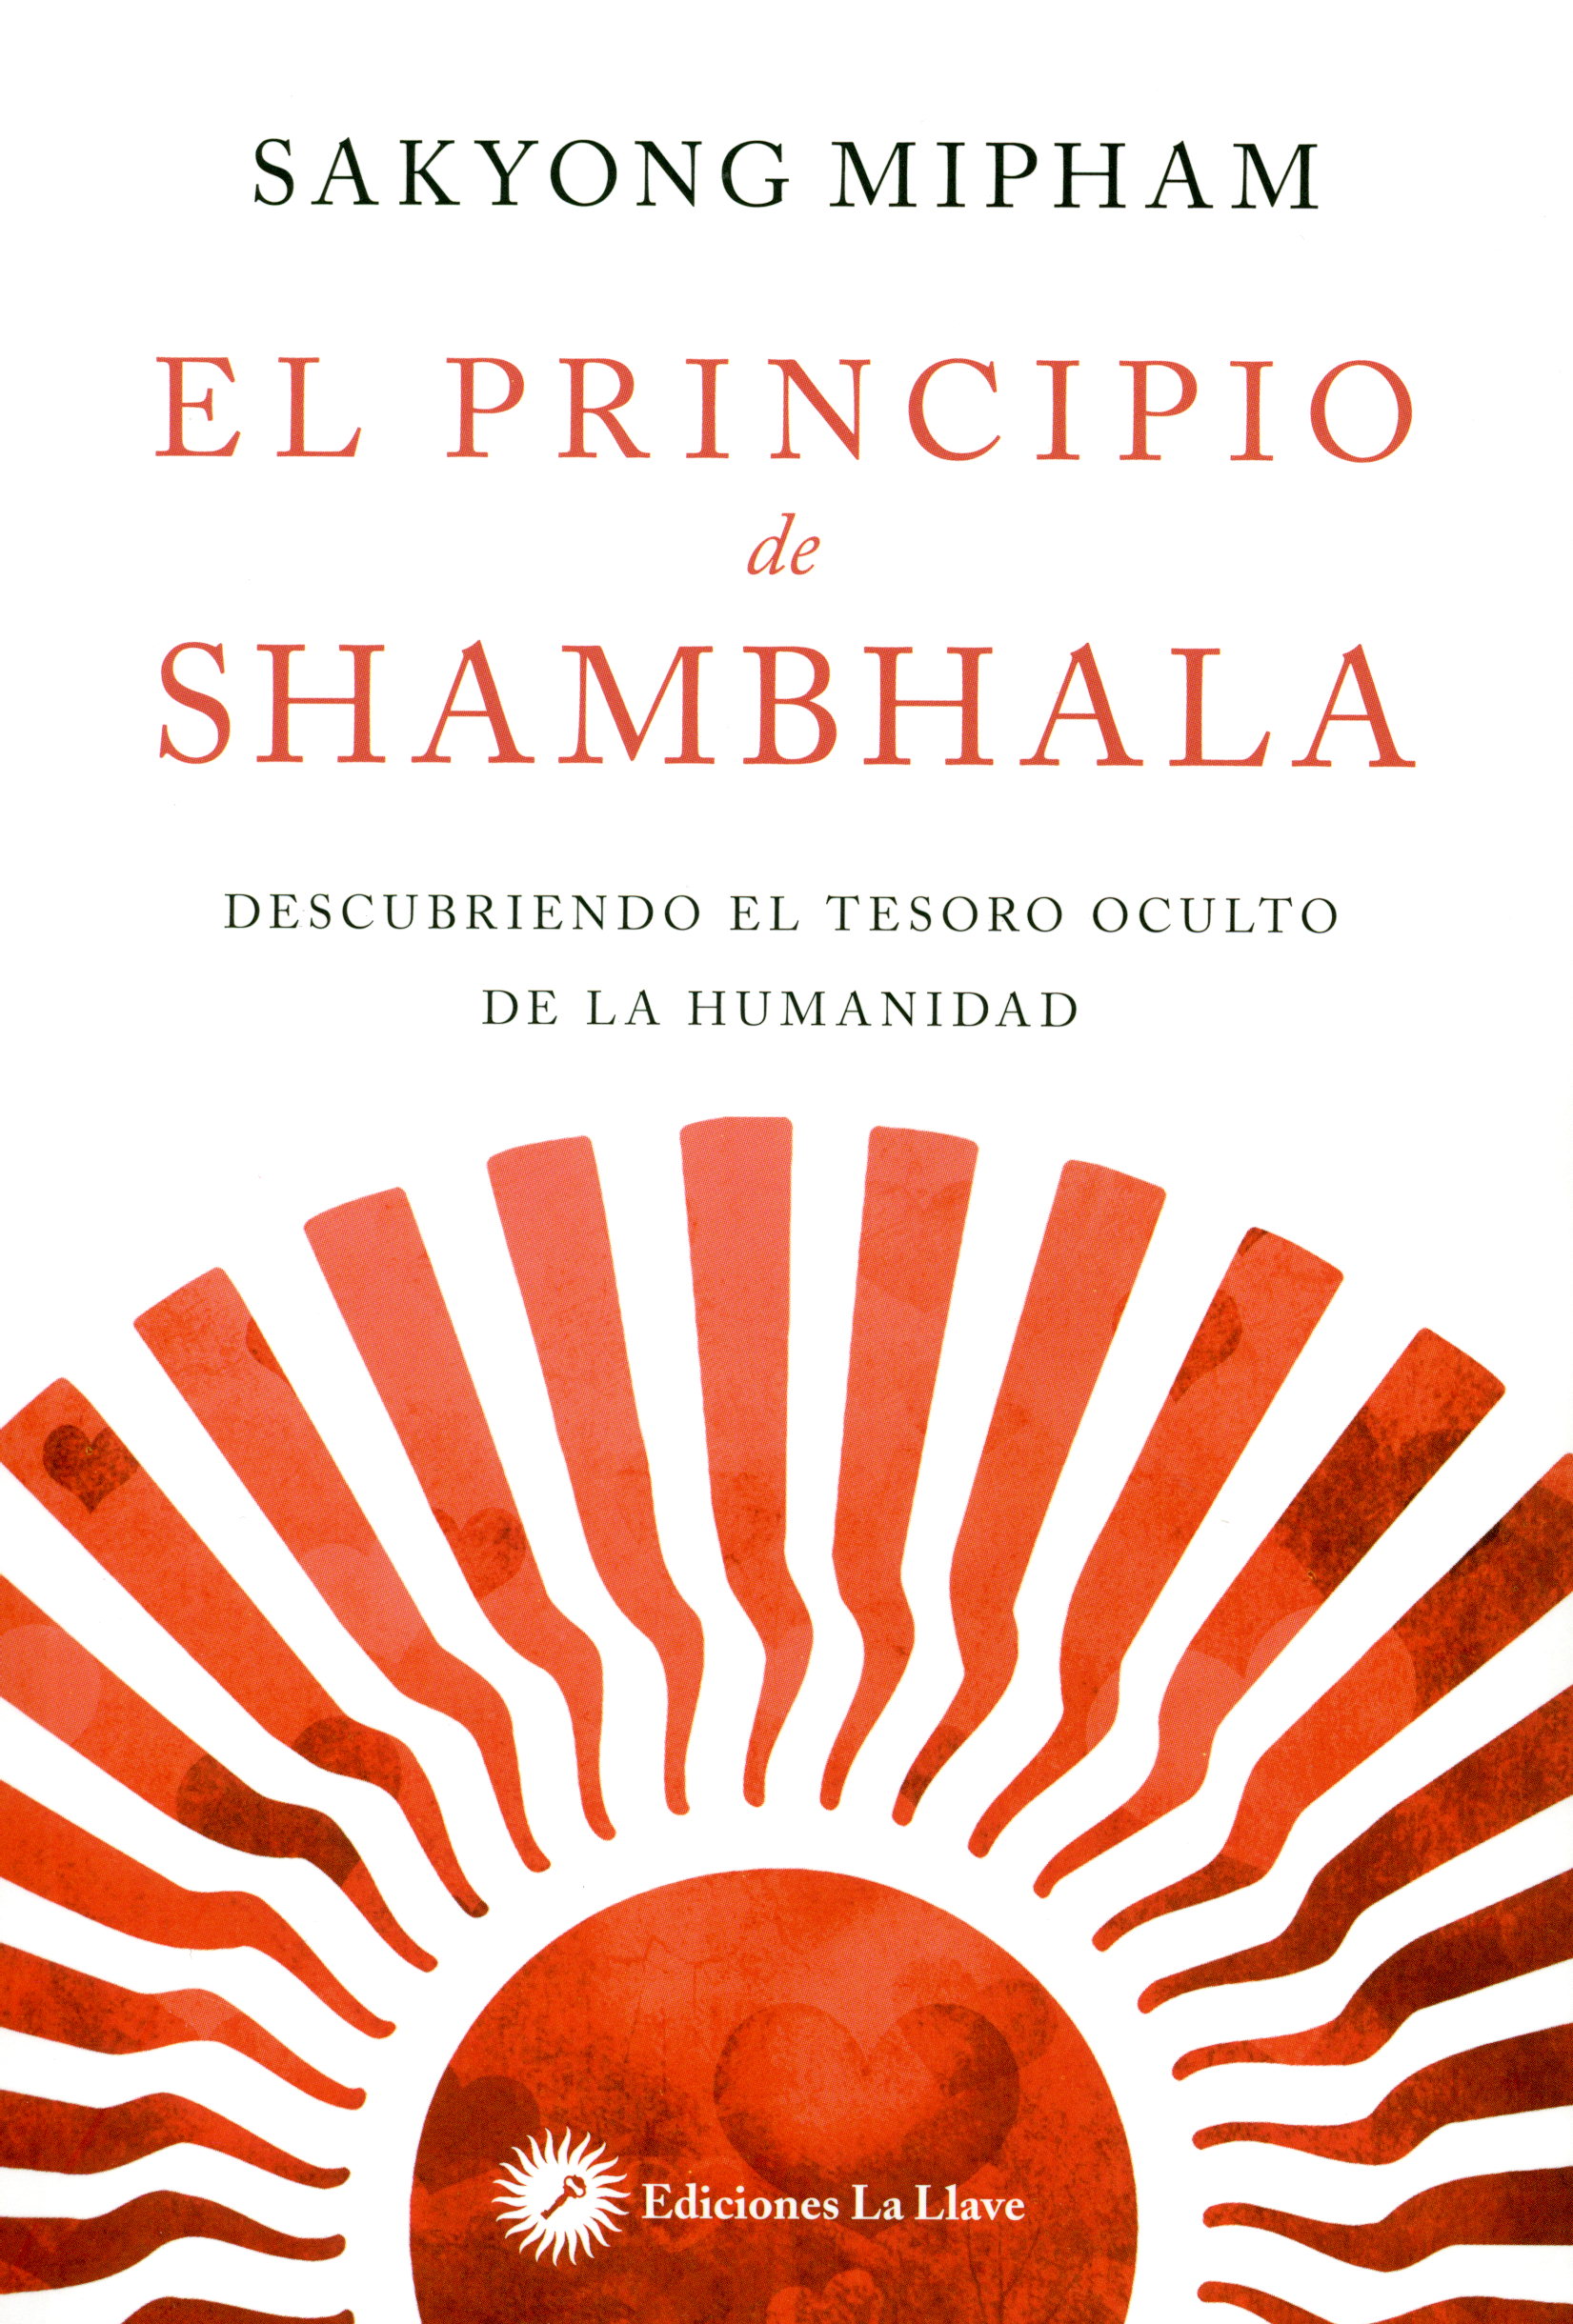 El principio de shambhala : descubriendo el tesoro oculto de la humanidad